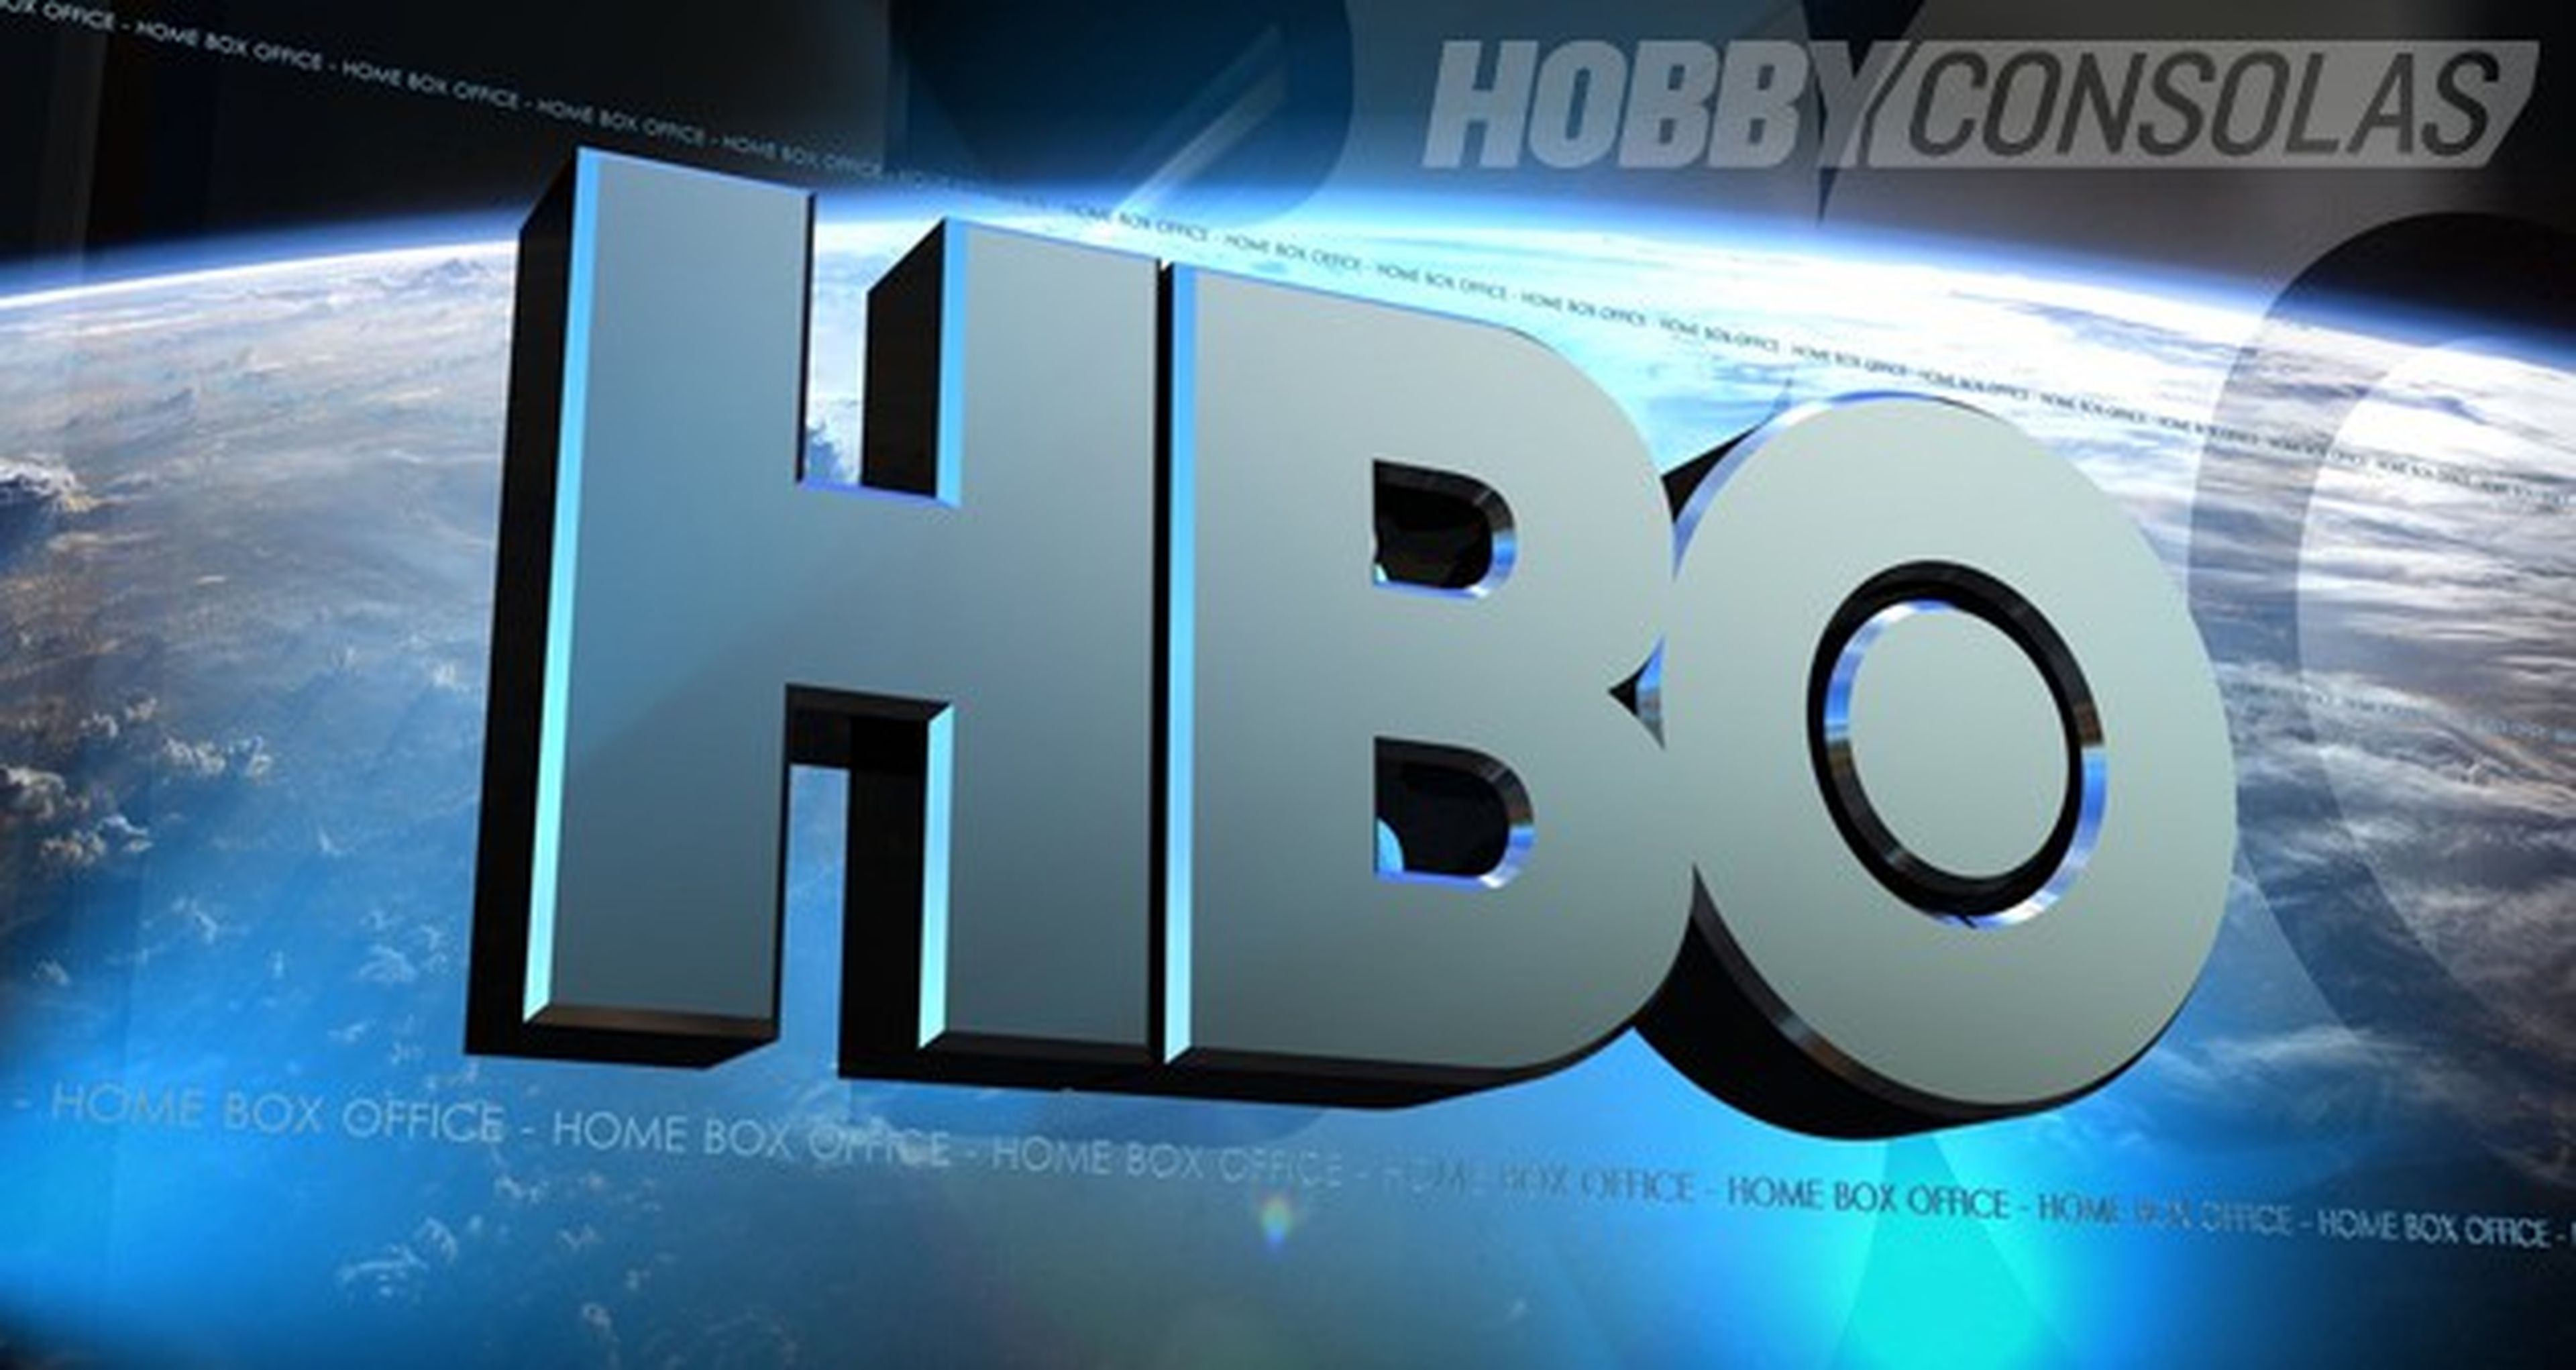 HBO tendrá servicio de streaming en España gracias a Vodafone